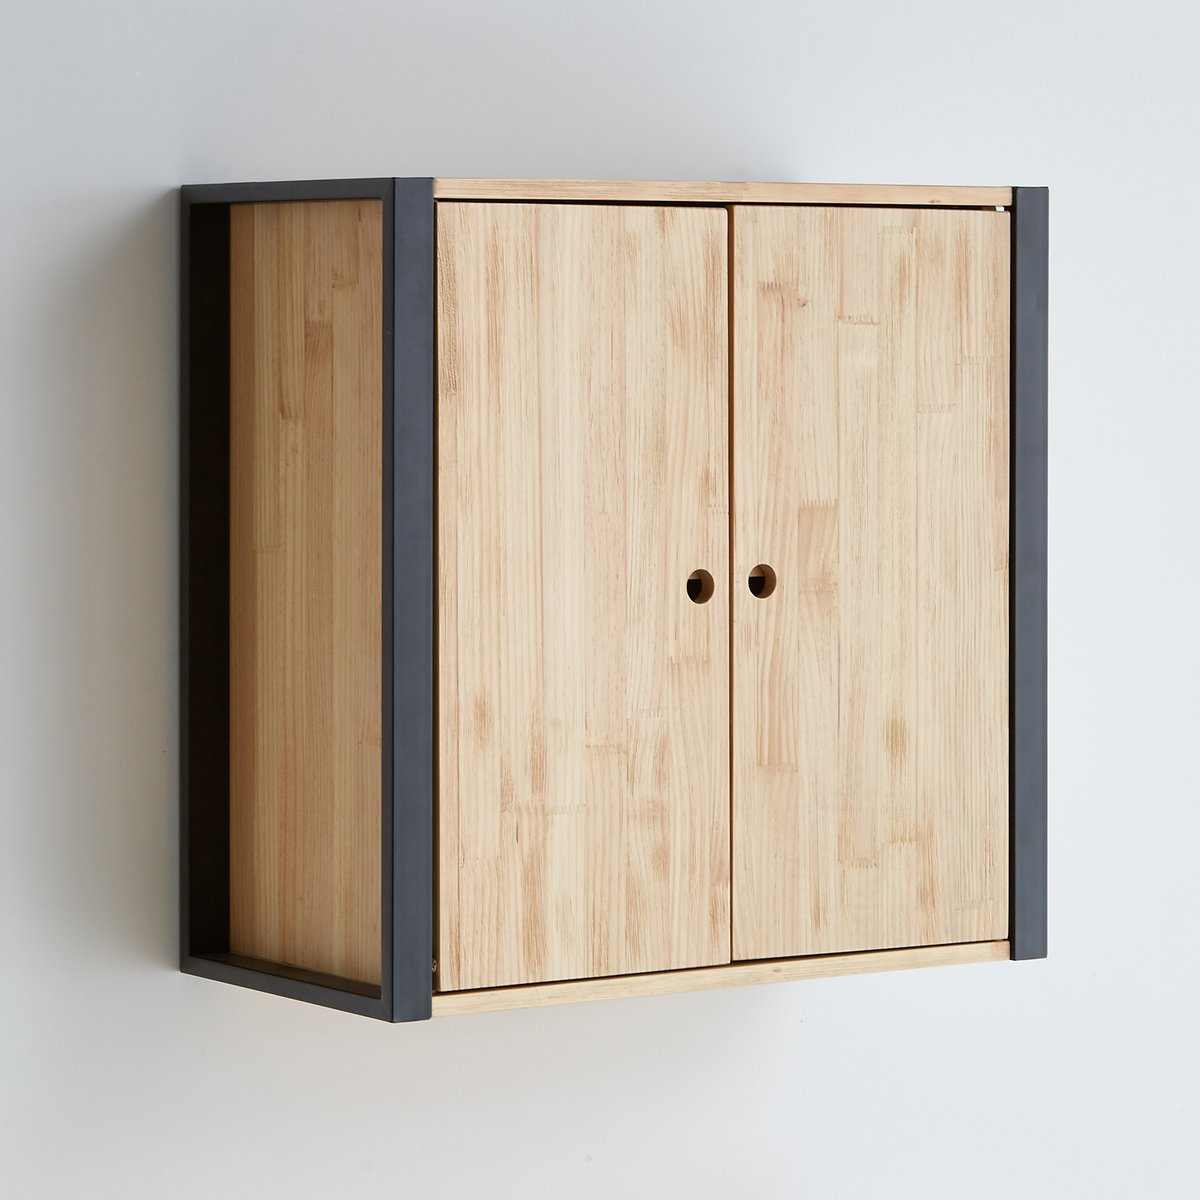 деревянные шкафчики для ванной комнаты